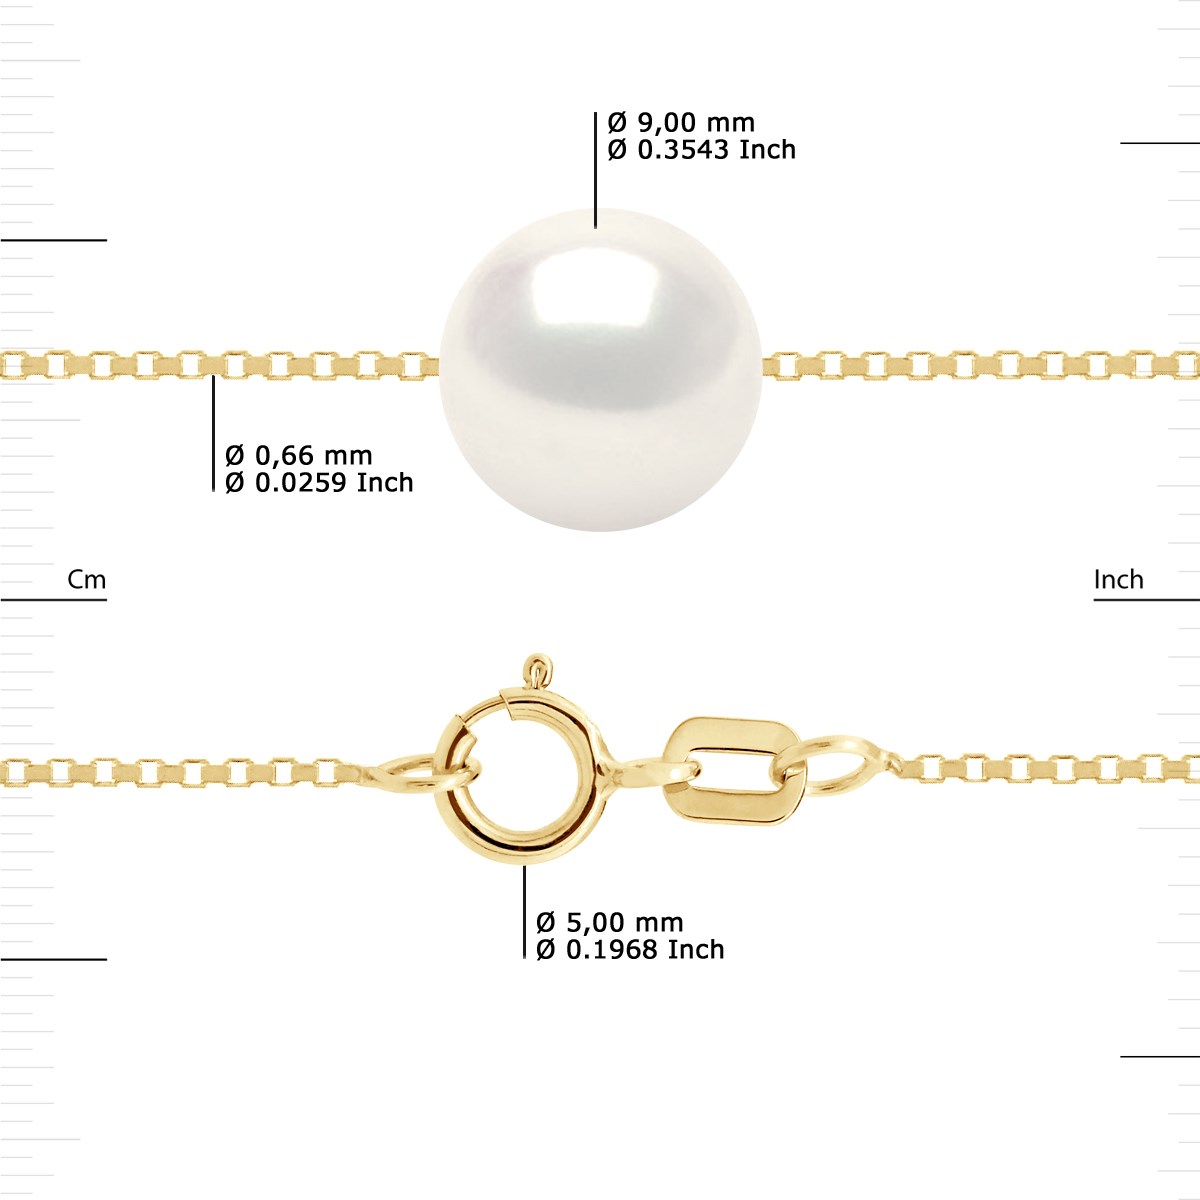 Collier Perle de Culture d'Eau Douce Ronde et Blanche 9-10 mm Chaîne Vénitienne Or Jaune - vue 3